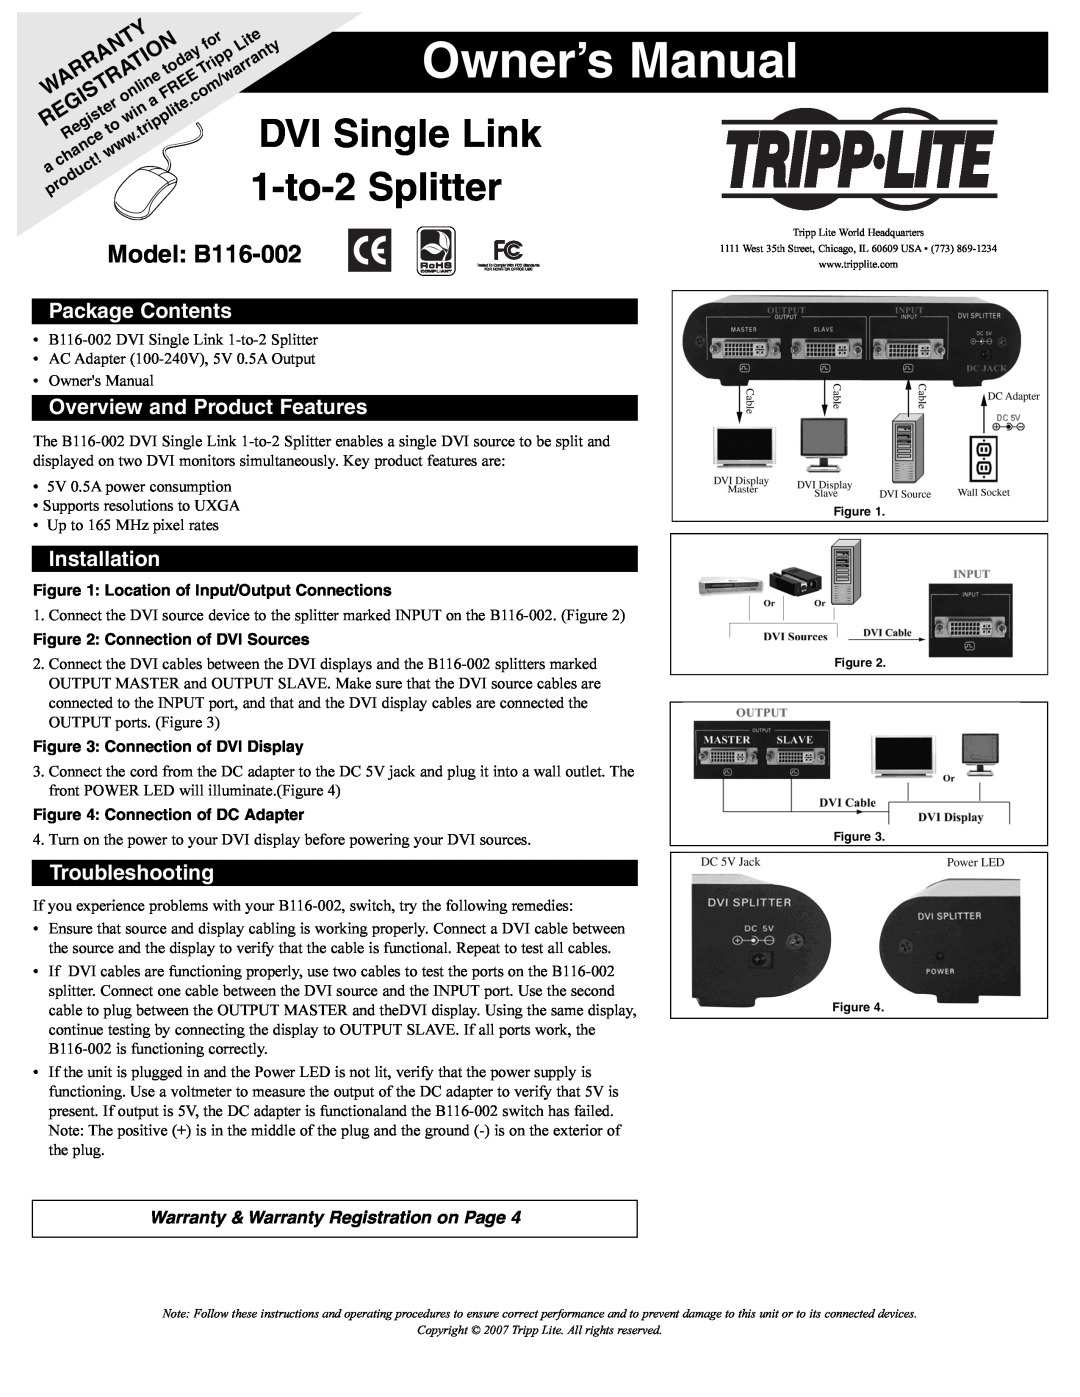 Tripp Lite owner manual DVI Single Link, 1-to-2Splitter, Model B116-002, Package Contents, Installation, Warranty, Lite 